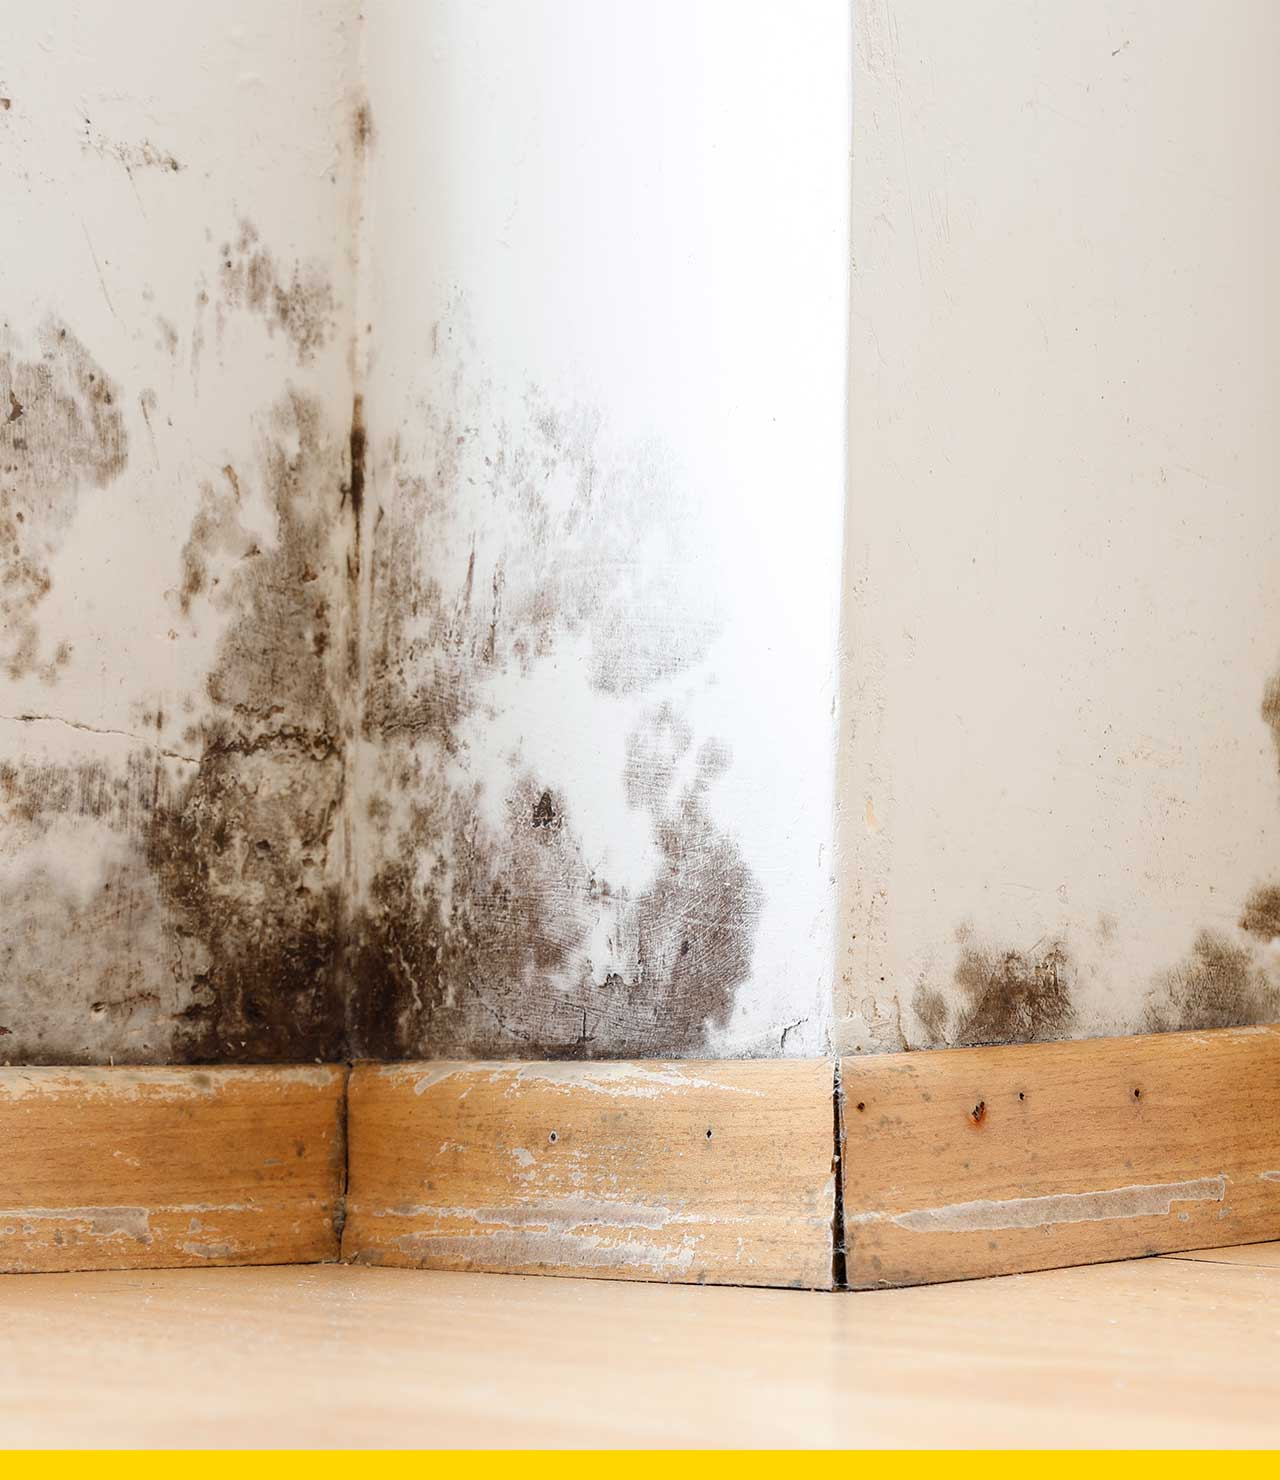 Cómo resolver los problemas de humedad en paredes y techos? – The Home  Depot Blog